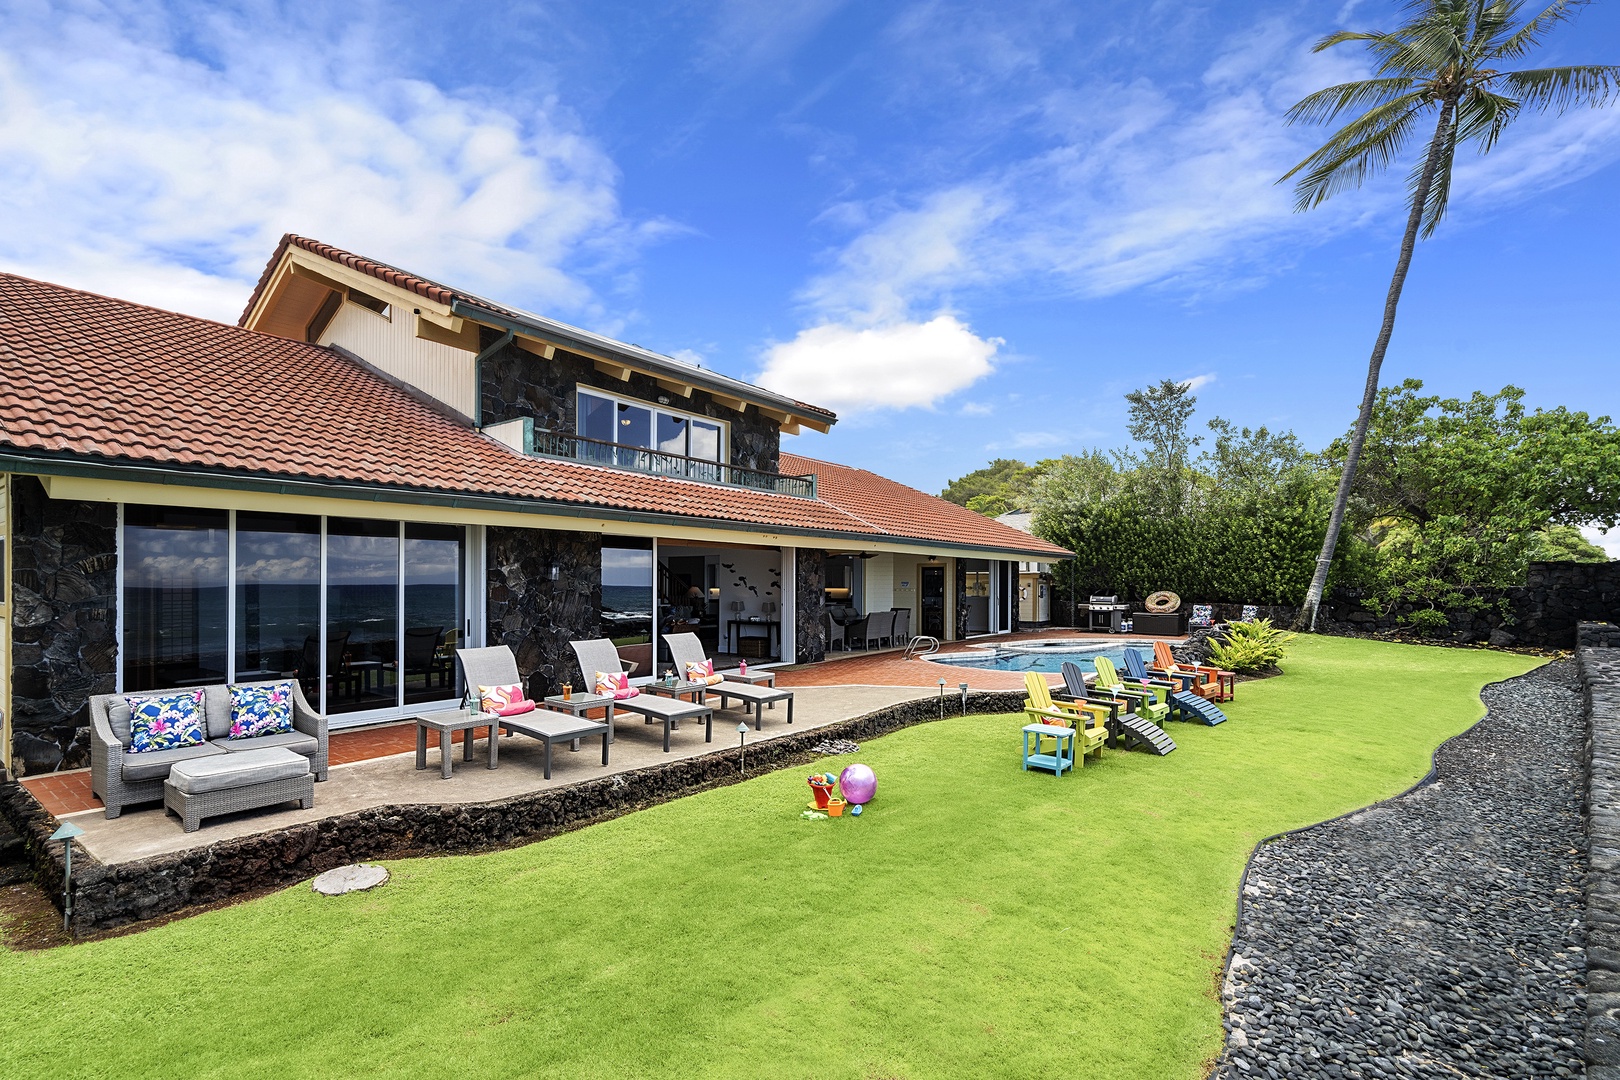 Kailua Kona Vacation Rentals, Hale Pua - Hale Pua back yard / Ocean side